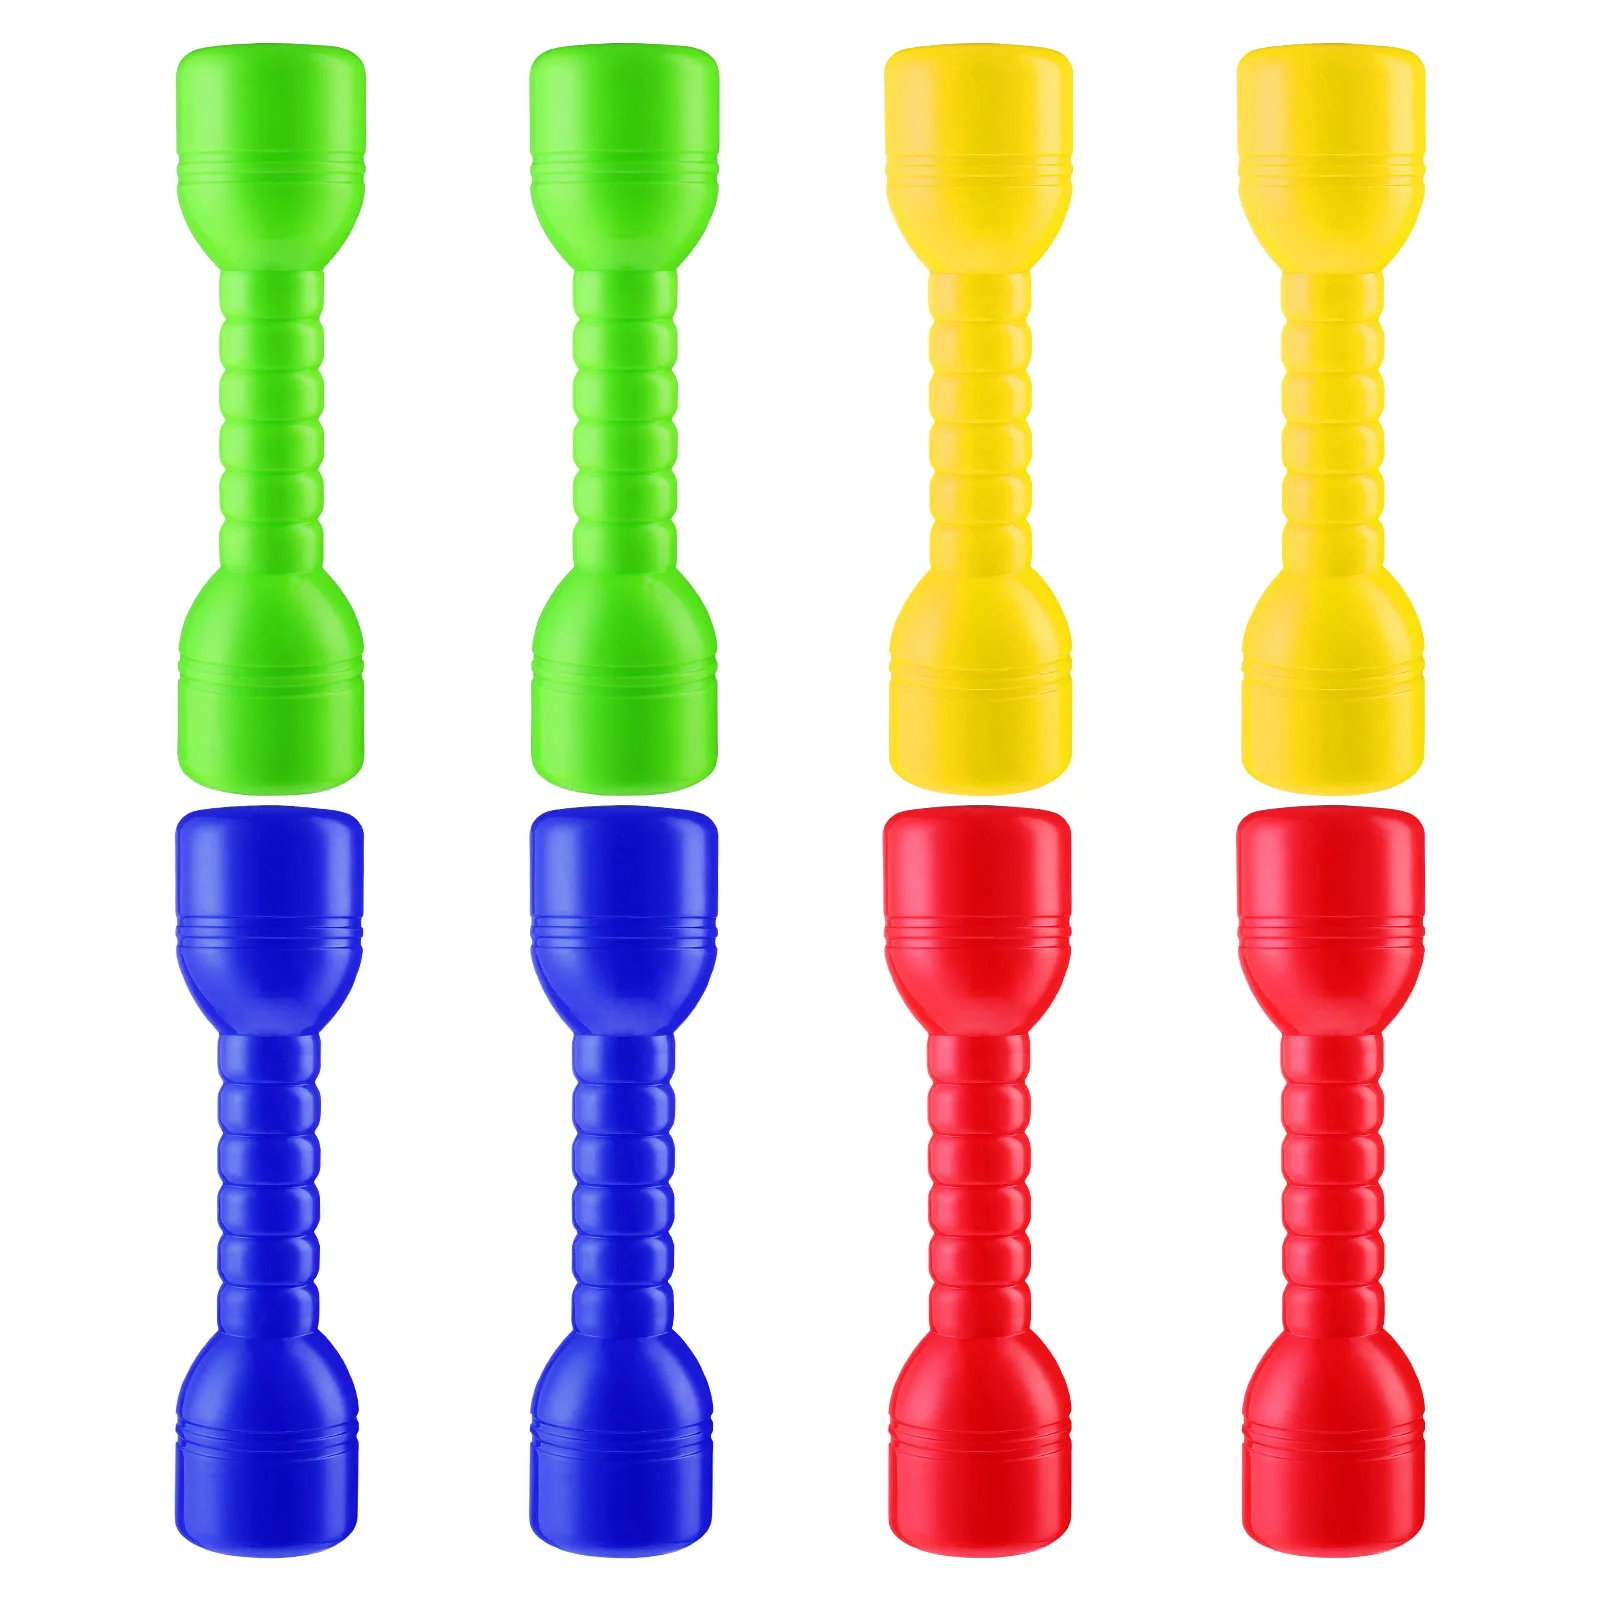 

LIOOBO 8 Pcs 4 Colors Plastic Dumbbells Ergonomic Children Morning Exercise Barbells Hand Bar for Kindergarten